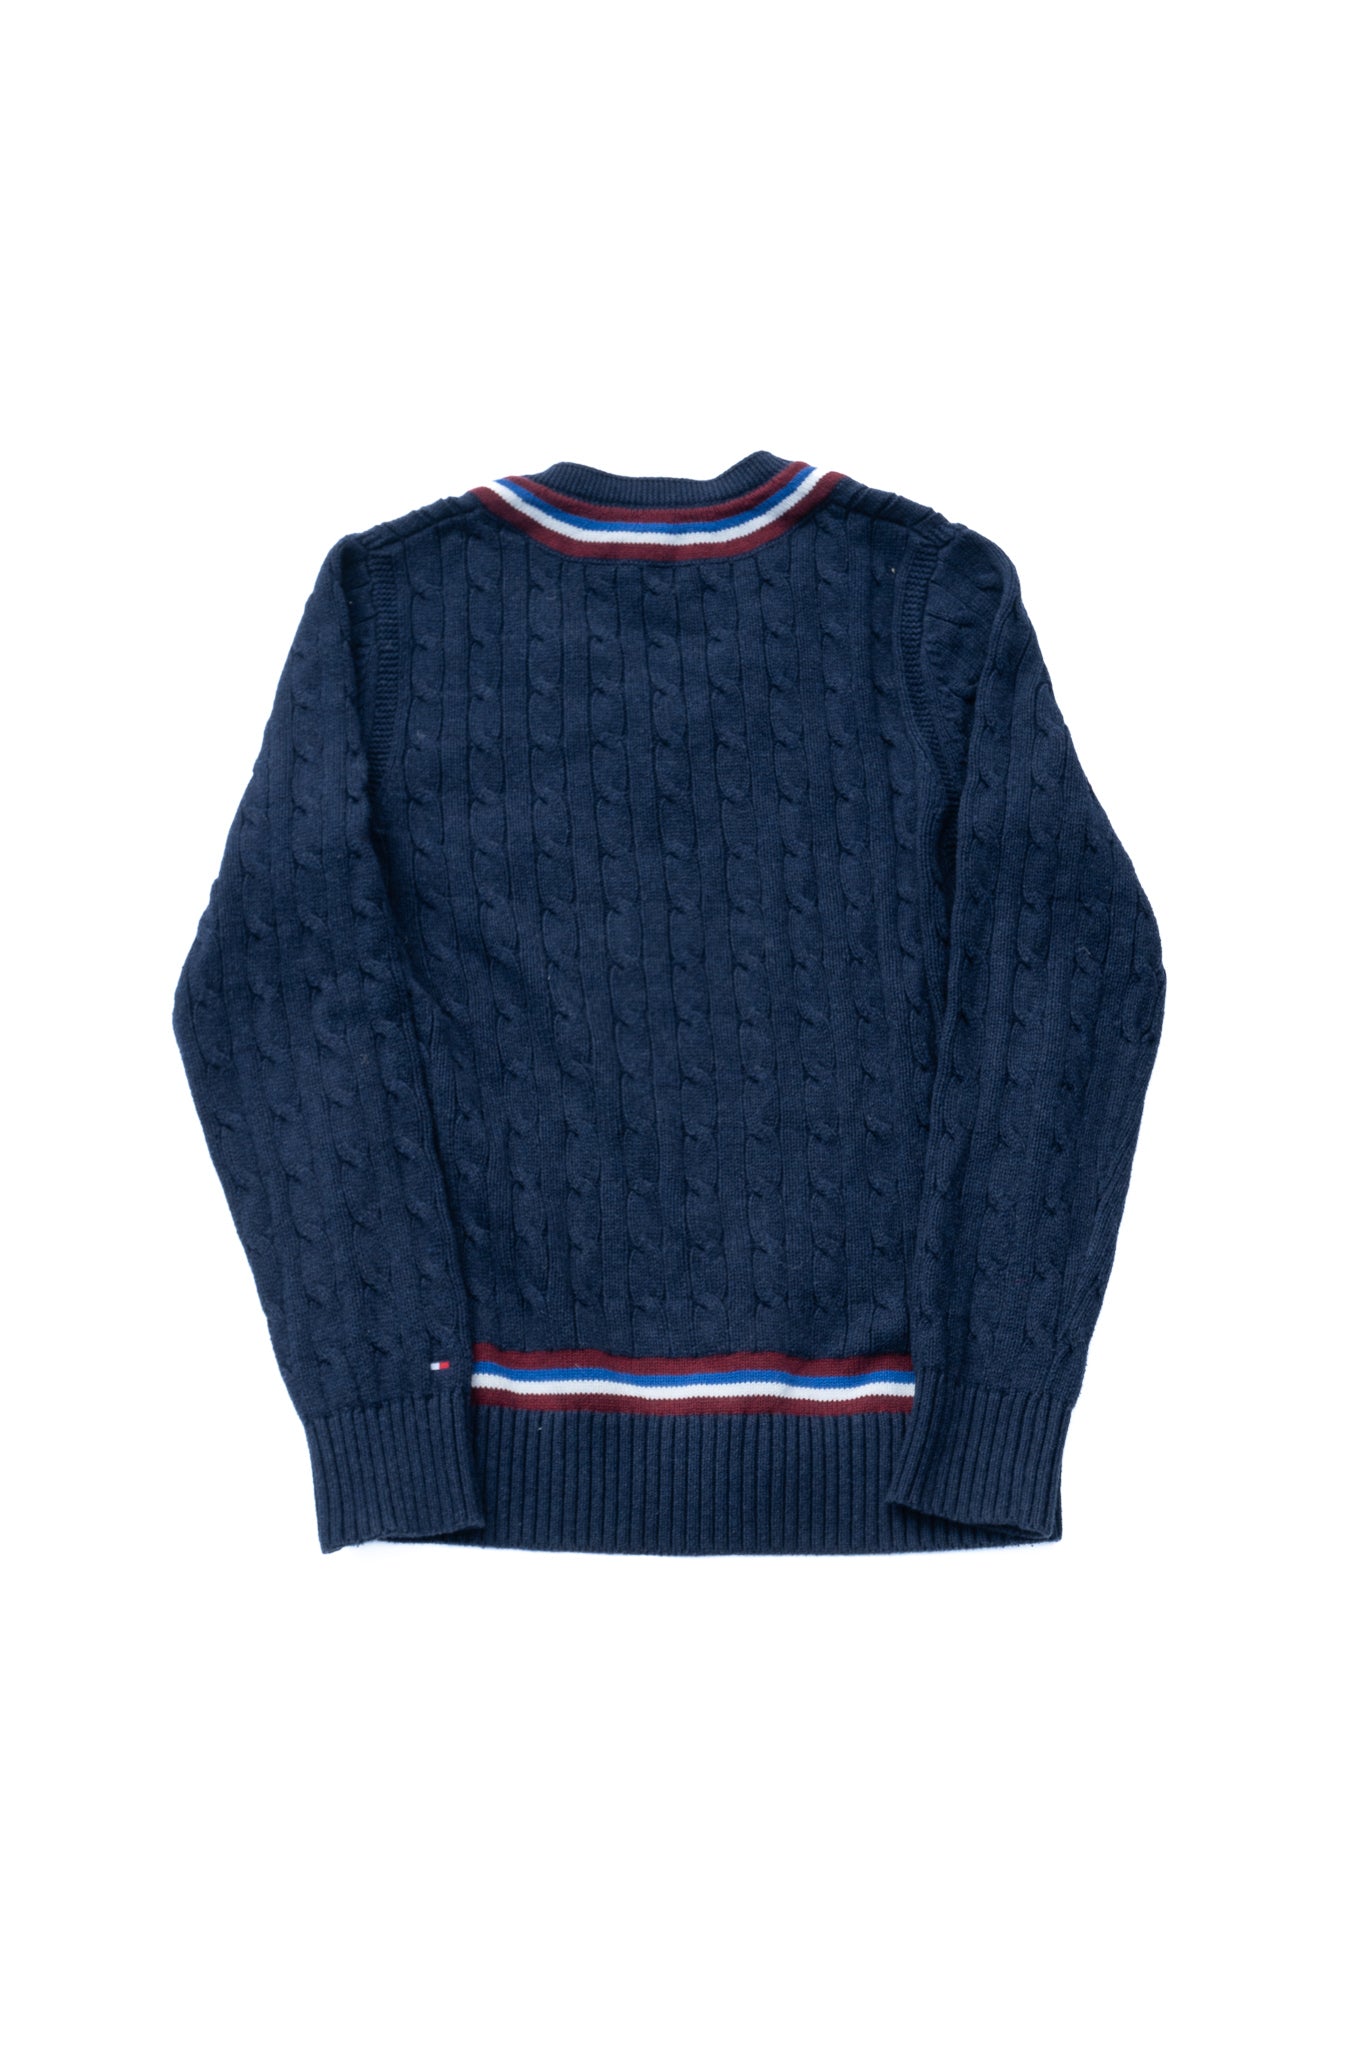 Tommy Hilfiger Preppie Sweater